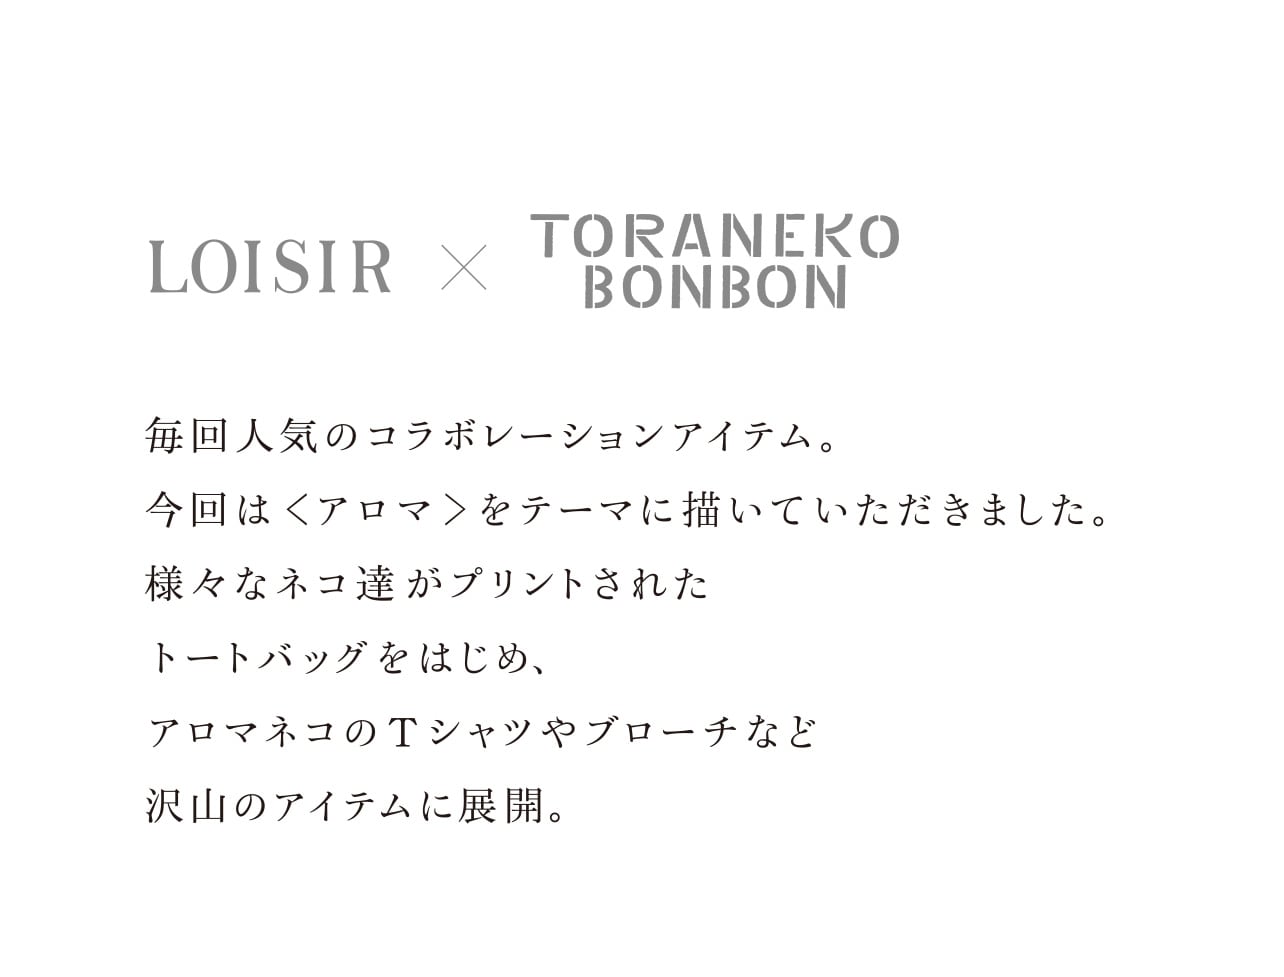 【LOISIR × TORANEKO BONBON】毎回人気のコラボレーションアイテム。 今回は＜アロマ＞をテーマに描いていただきました。 様々なネコ達がプリントされた トートバッグをはじめ、 アロマネコのTシャツやブローチなど 沢山のアイテムに展開。